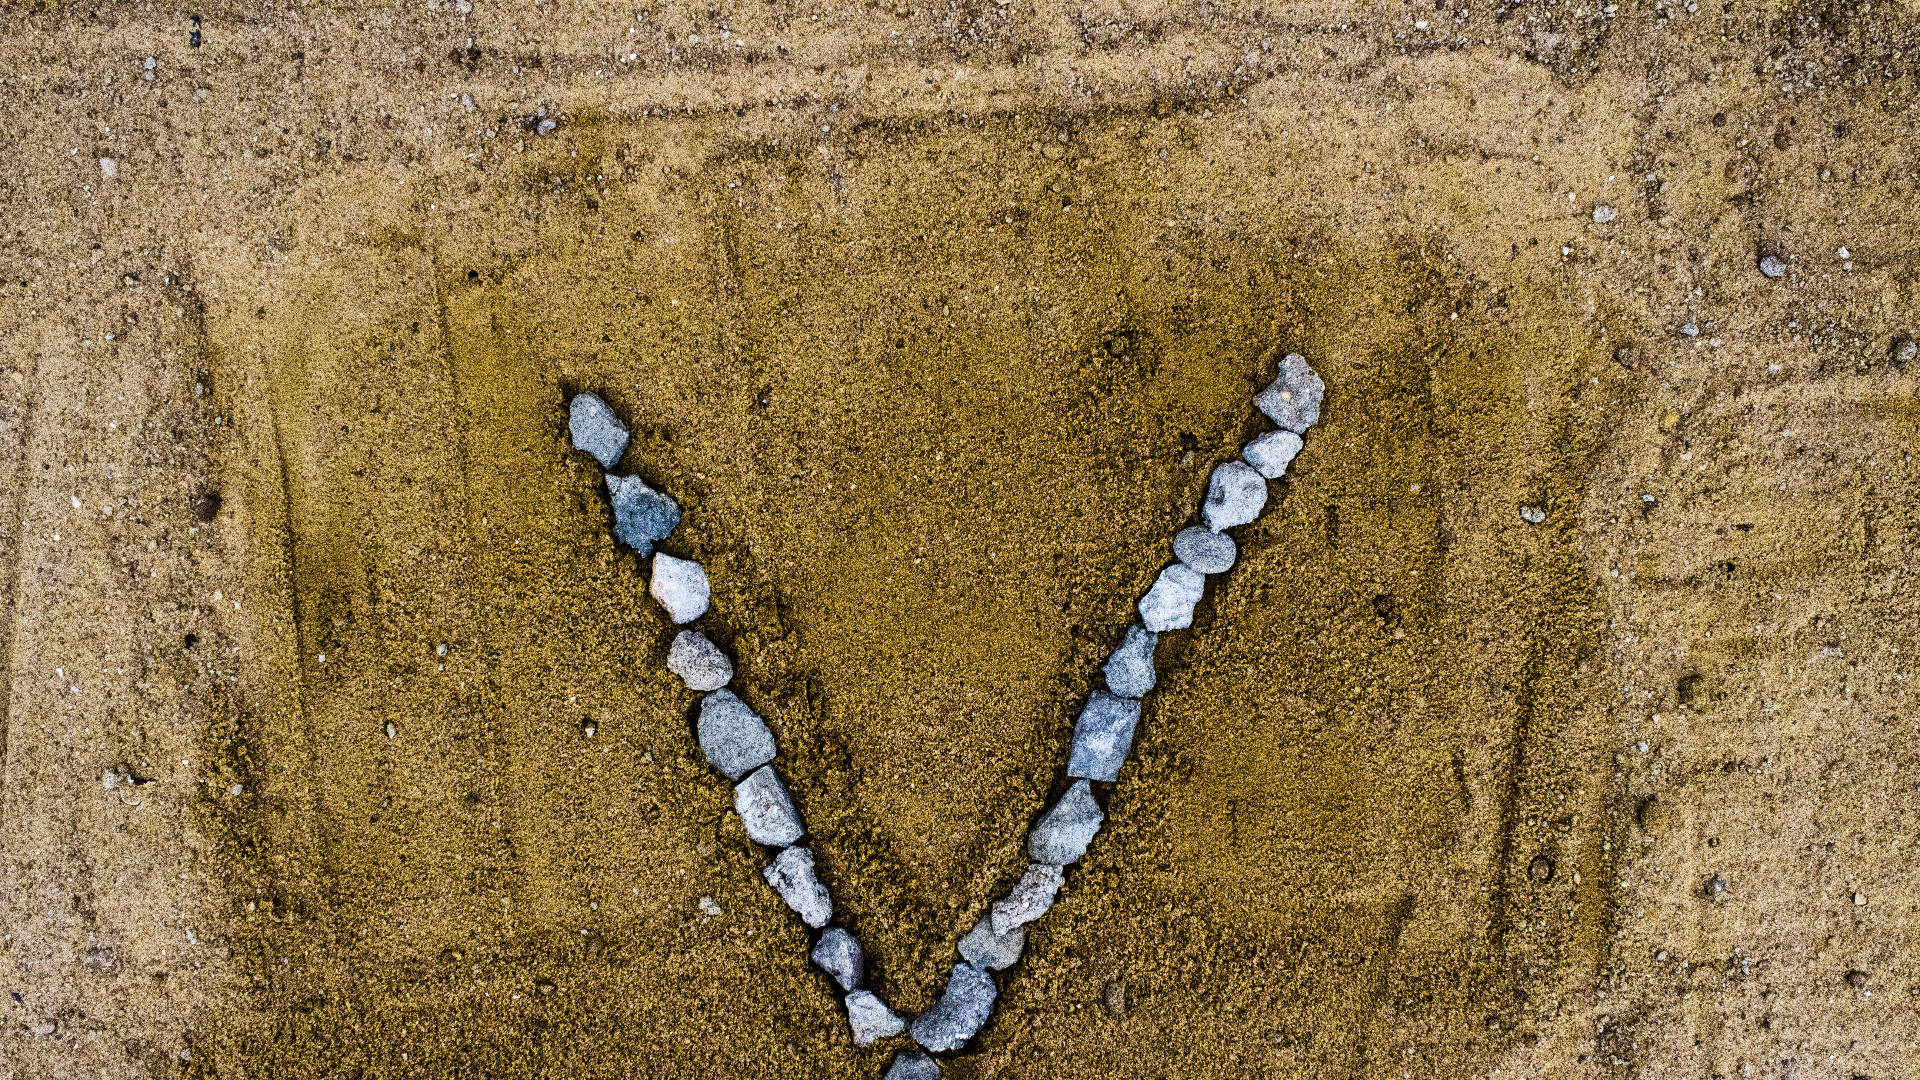 Letter V Shaped Rocks On Sand